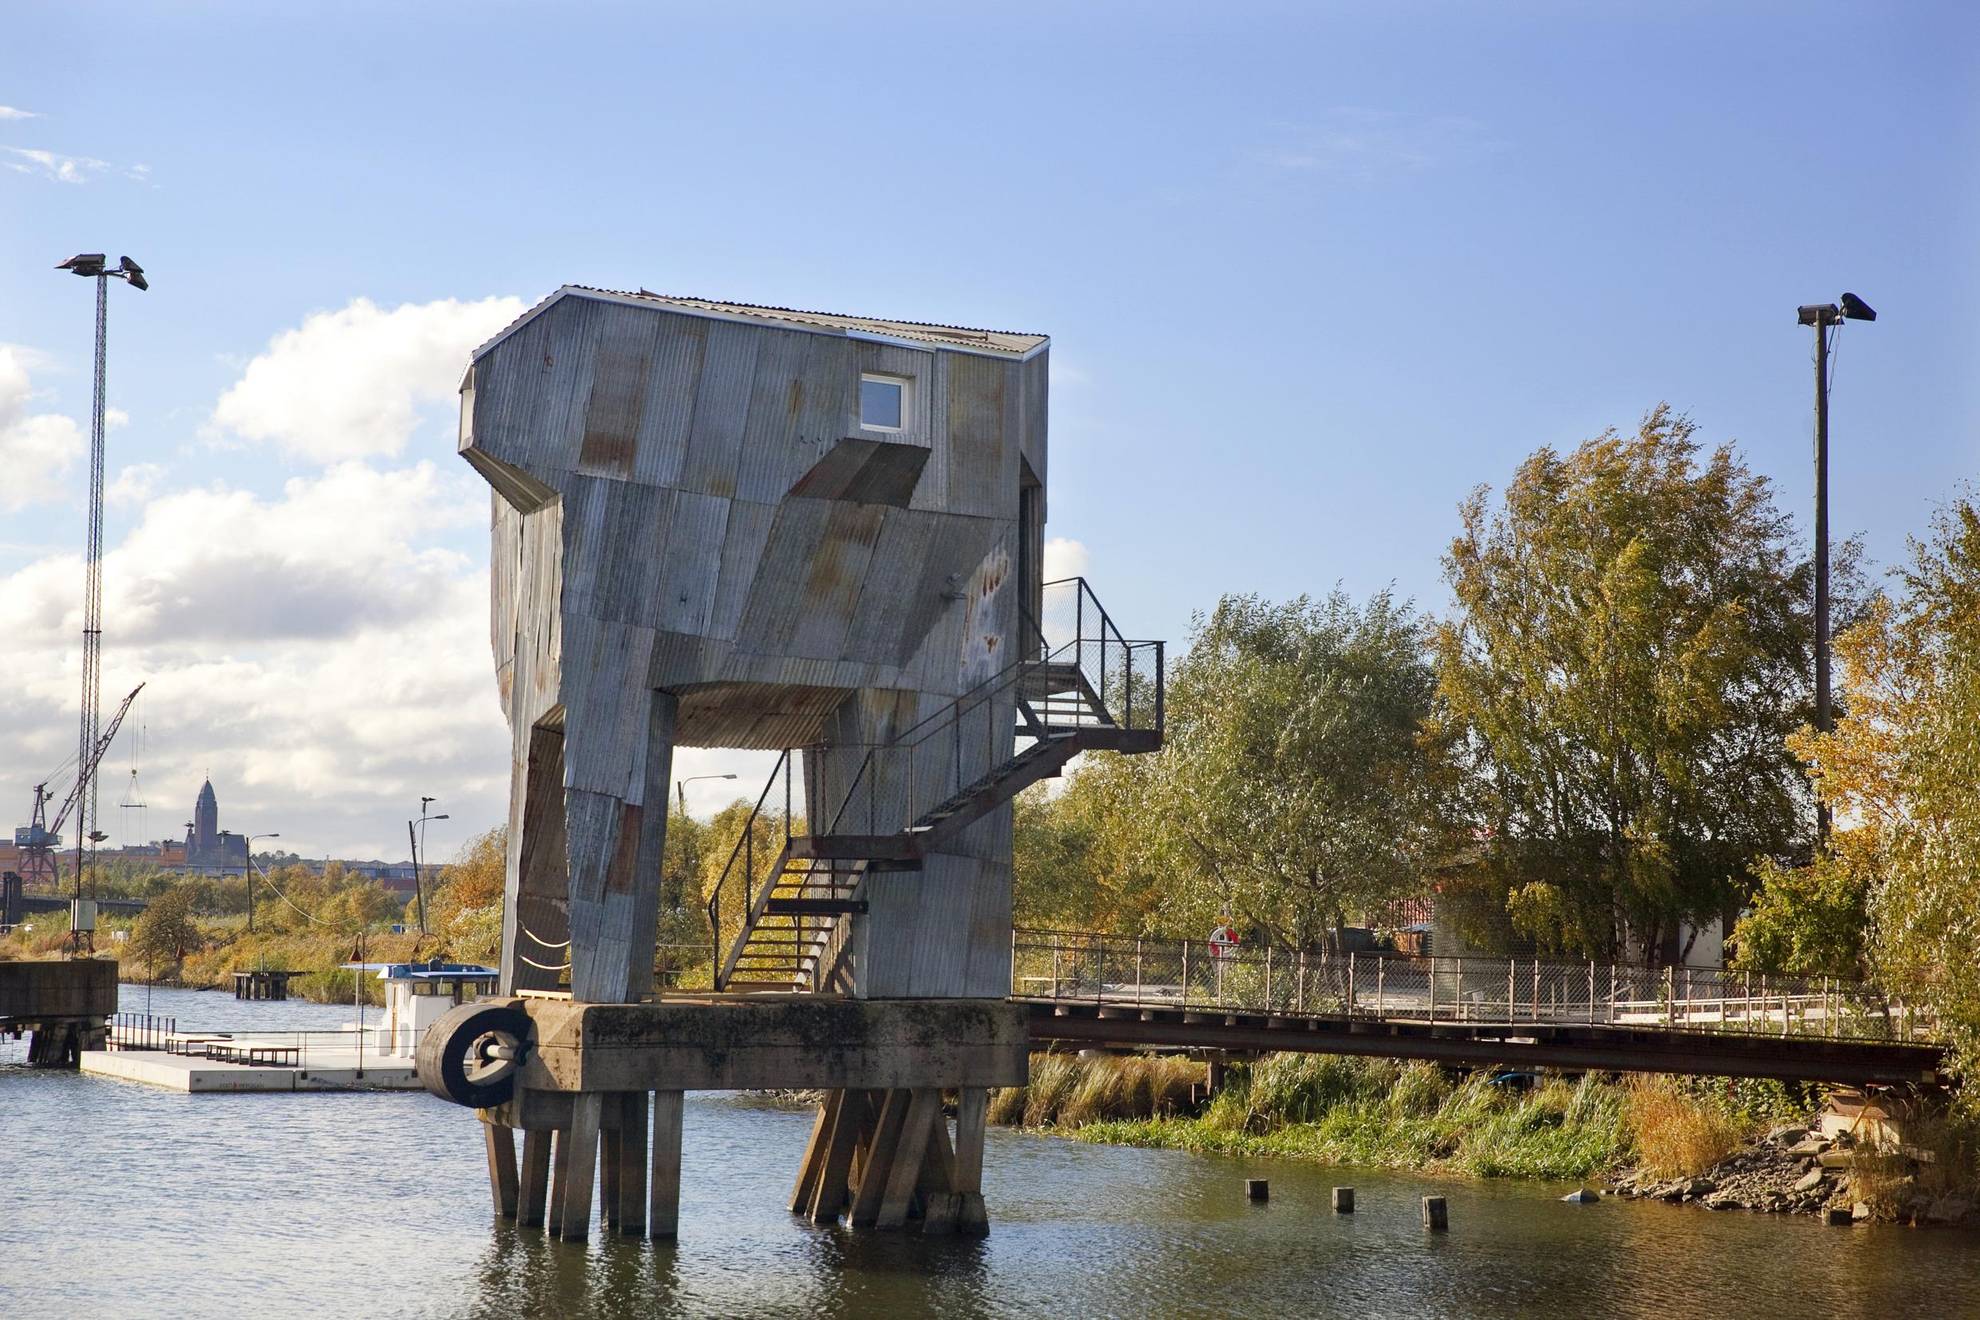 Hoch gebaute Sauna in Grau aus recycelbaren Materialien, die auf einer Plattform über dem Wasser in Frihamnen, Göteborg, steht.